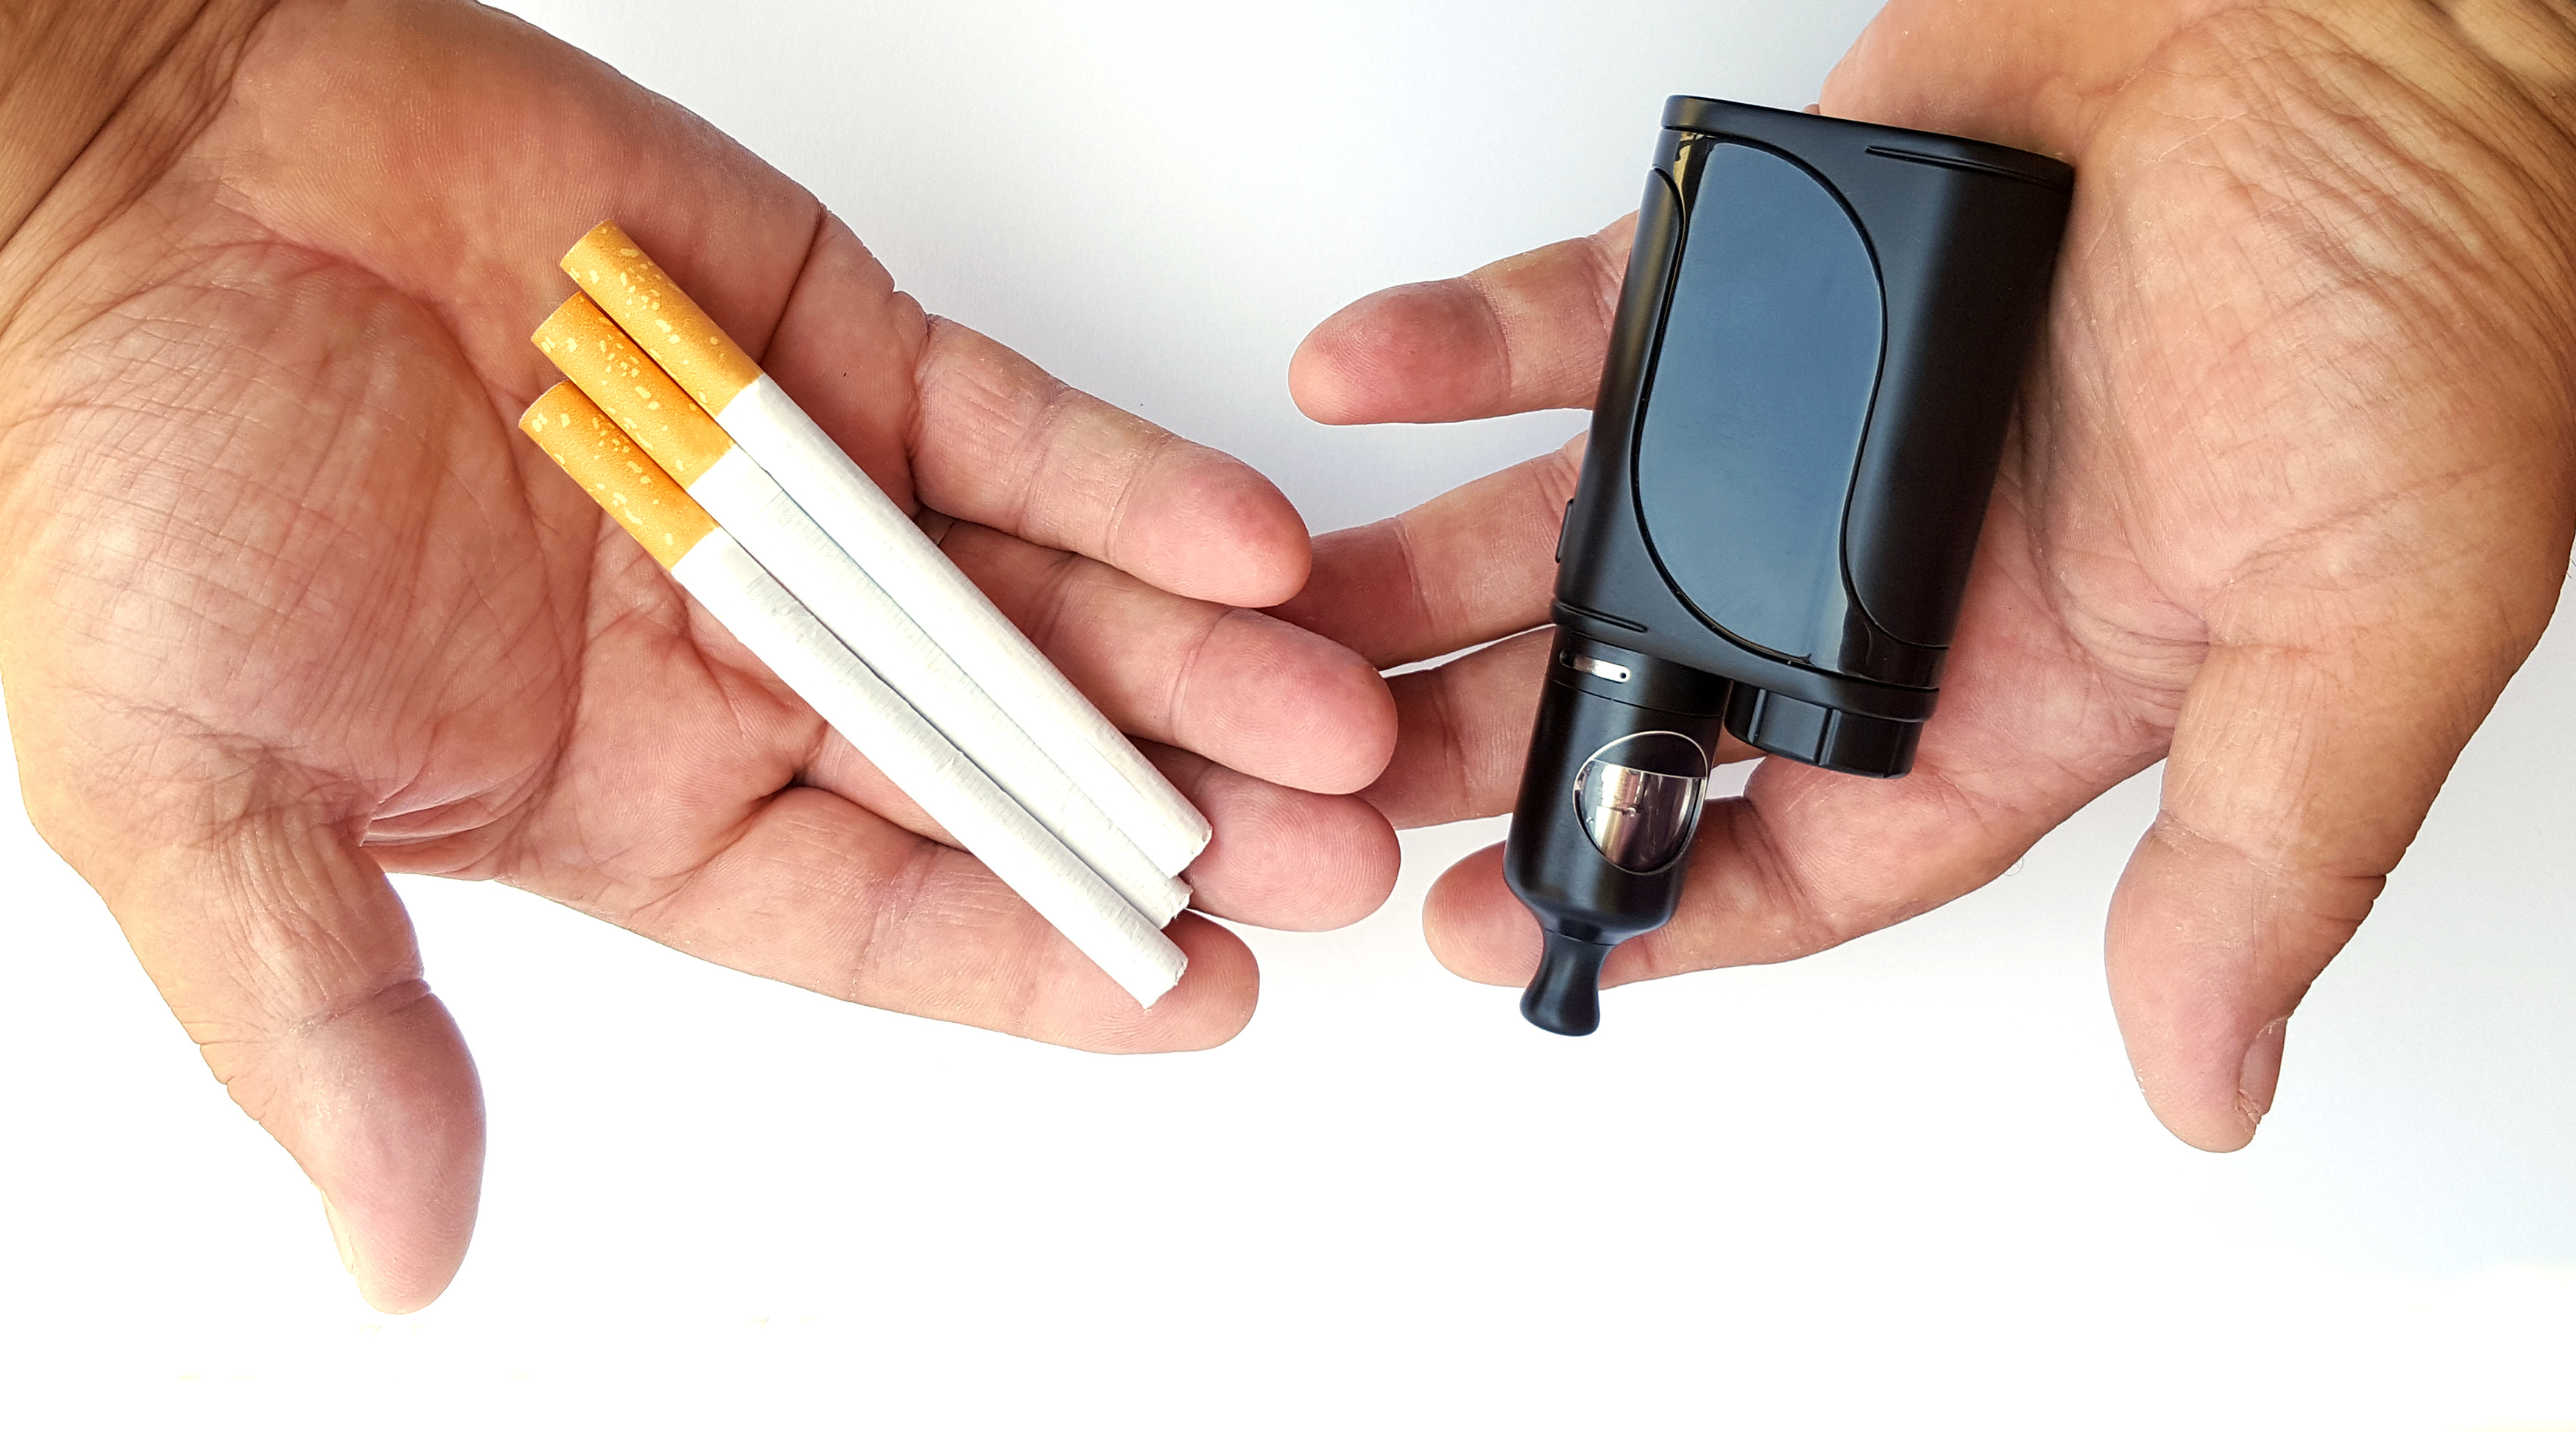 El cigarrillo electrónico suele presentarse como una alternativa para dejar de fumar (Foto: American Cancer Society)